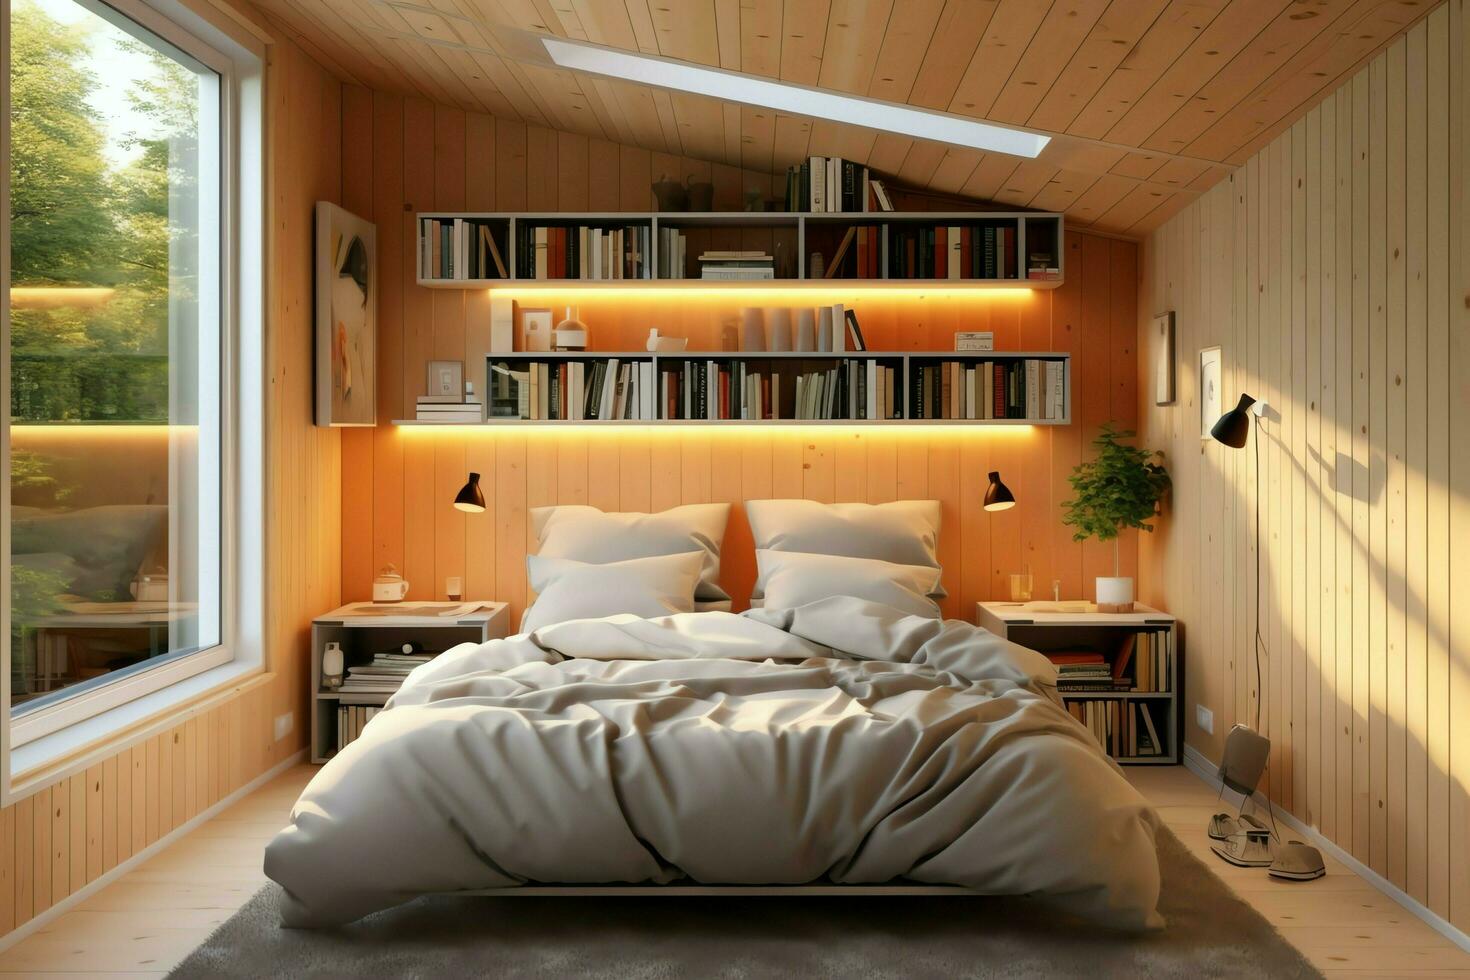 modern slaapkamer interieur ontwerp in appartement of huis met meubilair. luxe slaapkamer Scandinavisch concept door ai gegenereerd foto